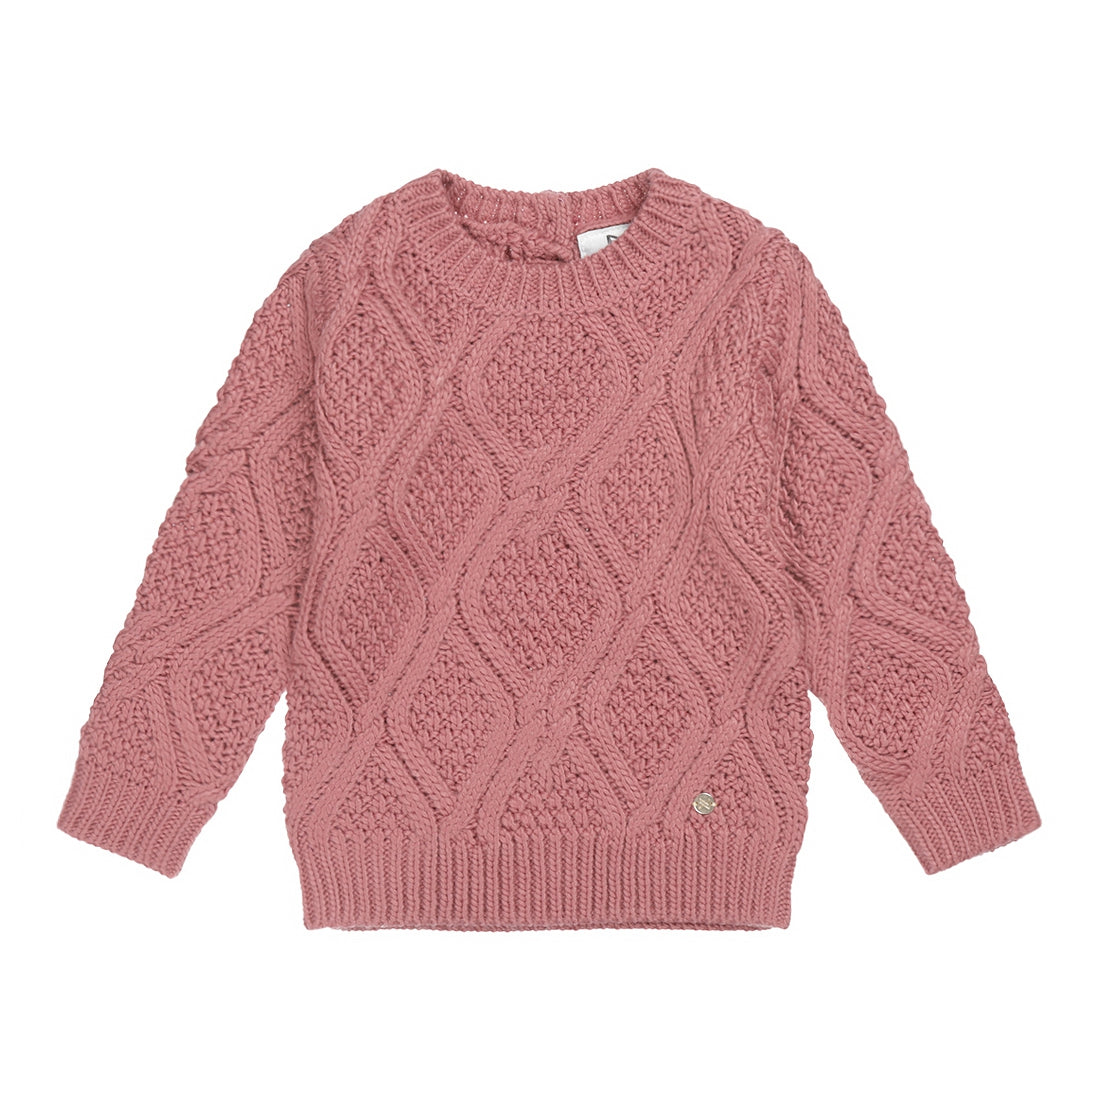 Meisjes Sweater ls with crewneck van Koko Noko in de kleur  Dark old pink in maat 128.